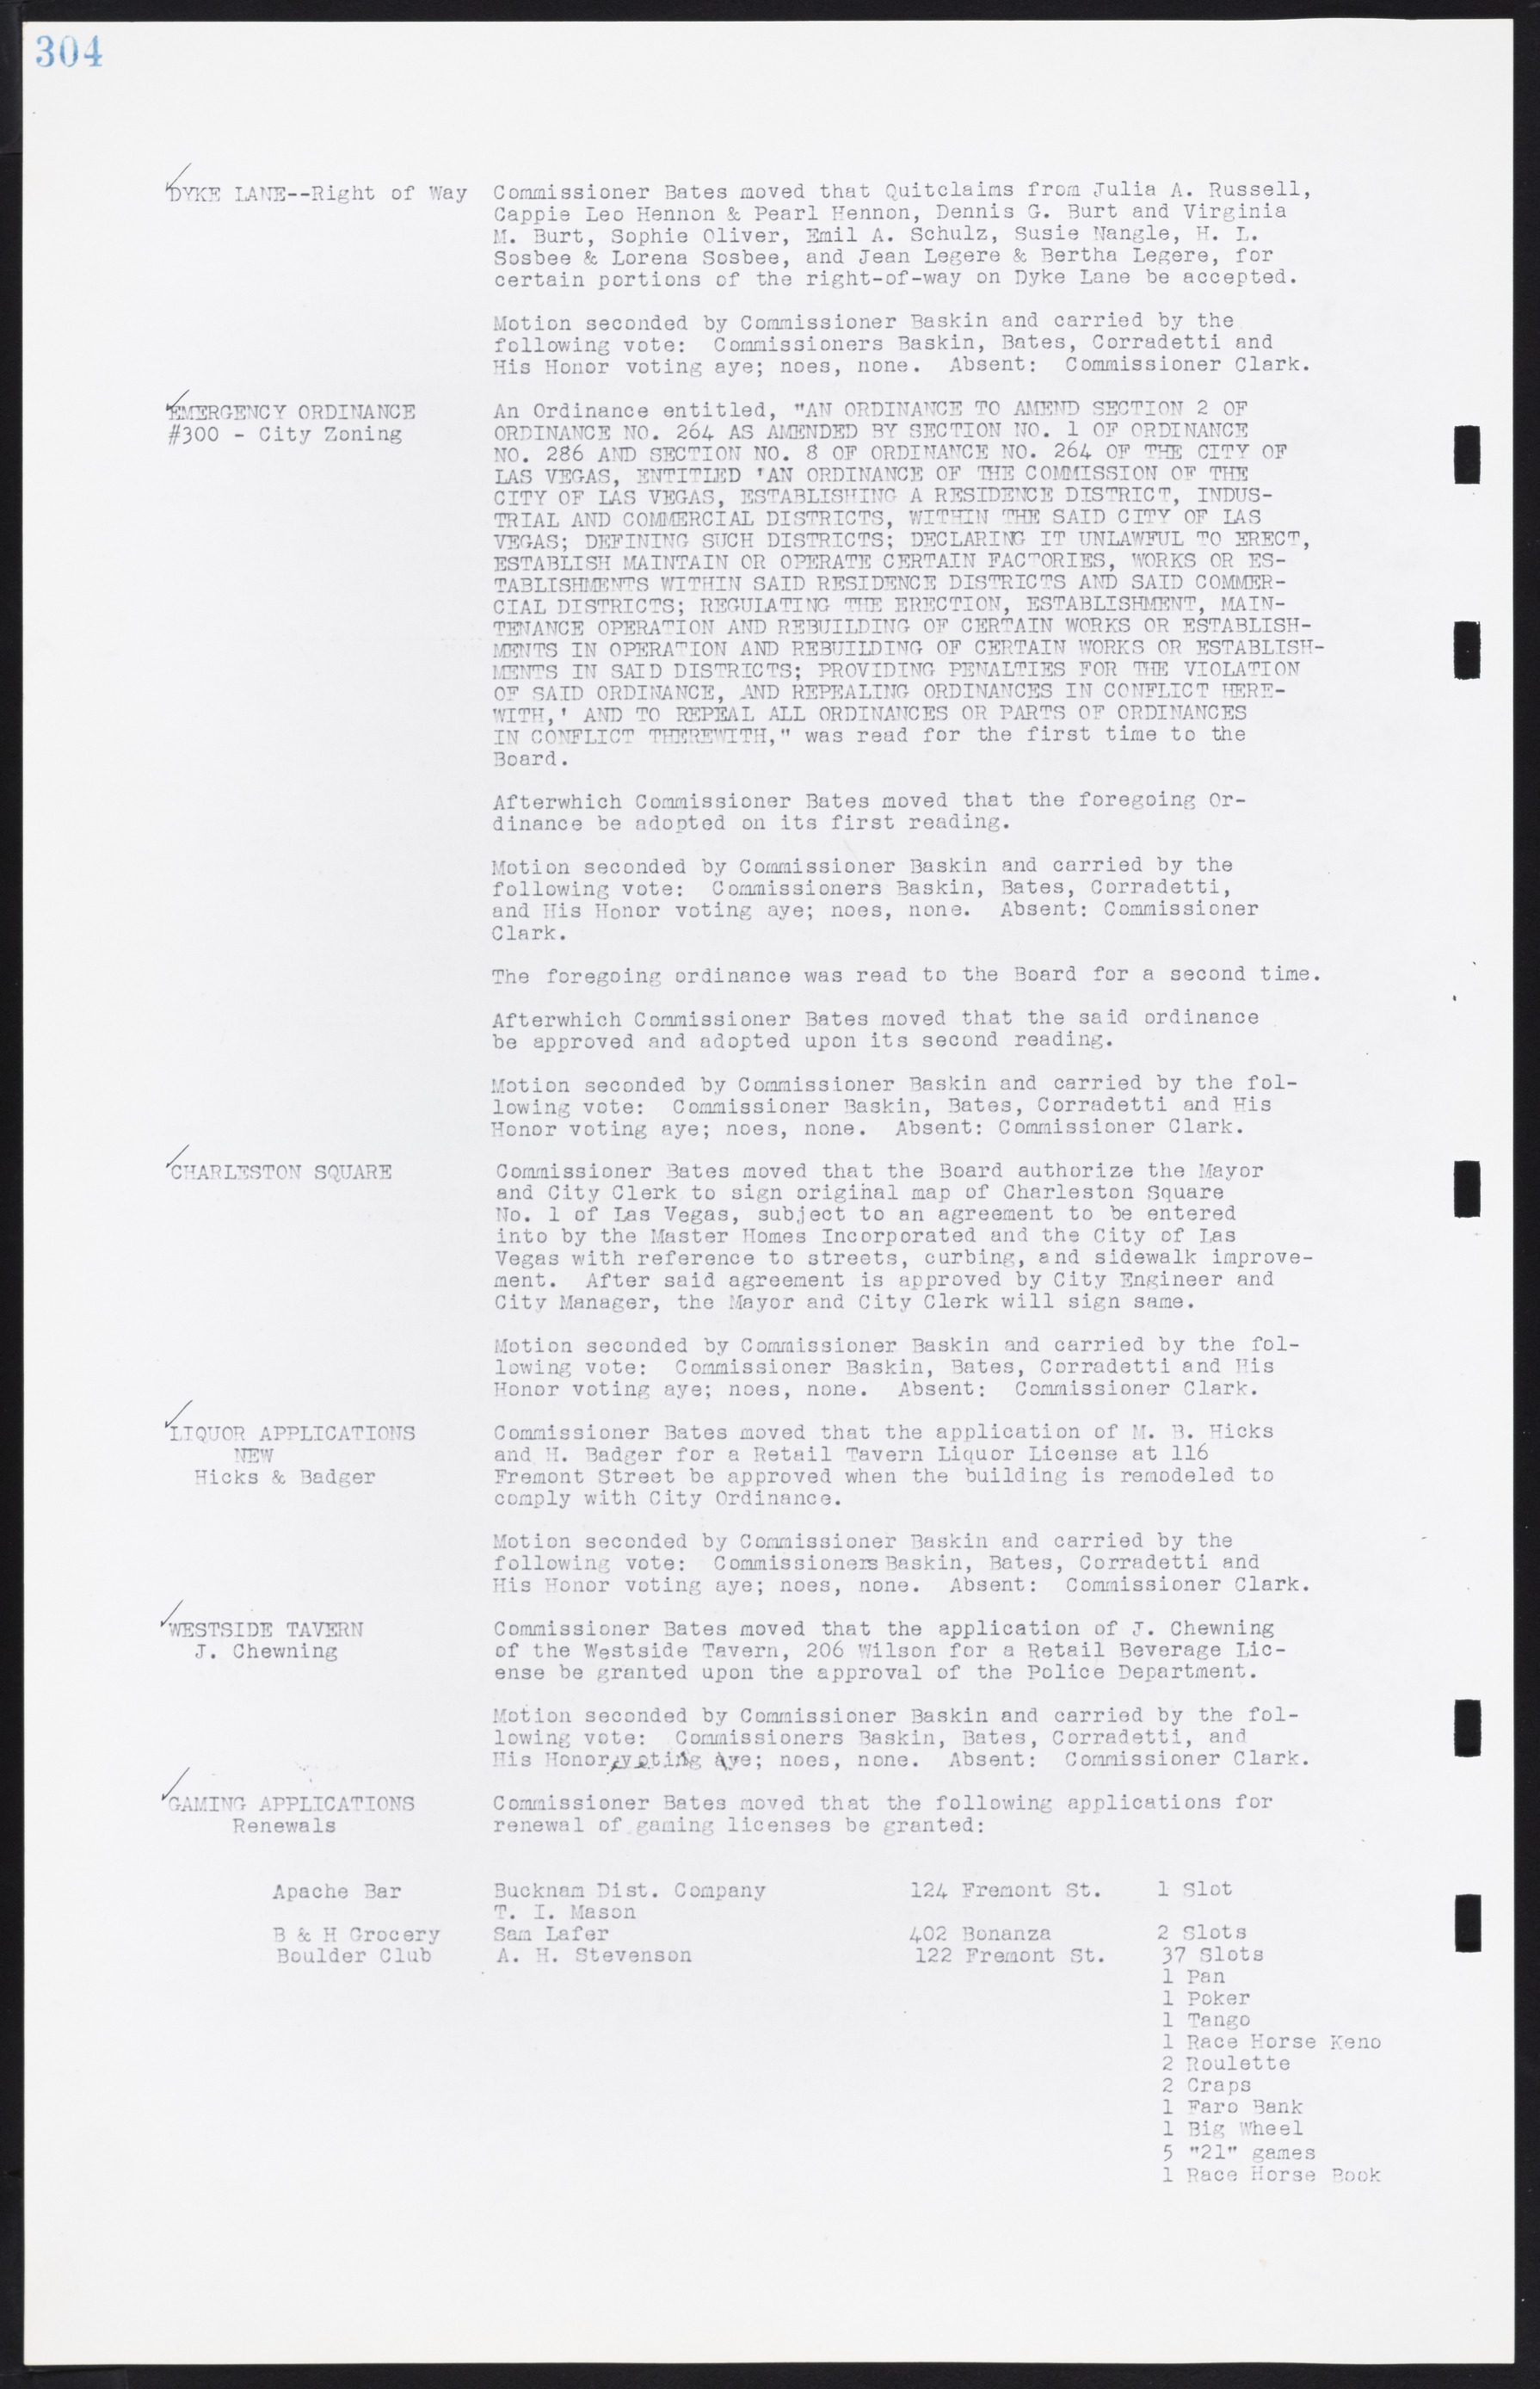 Las Vegas City Commission Minutes, August 11, 1942 to December 30, 1946, lvc000005-328